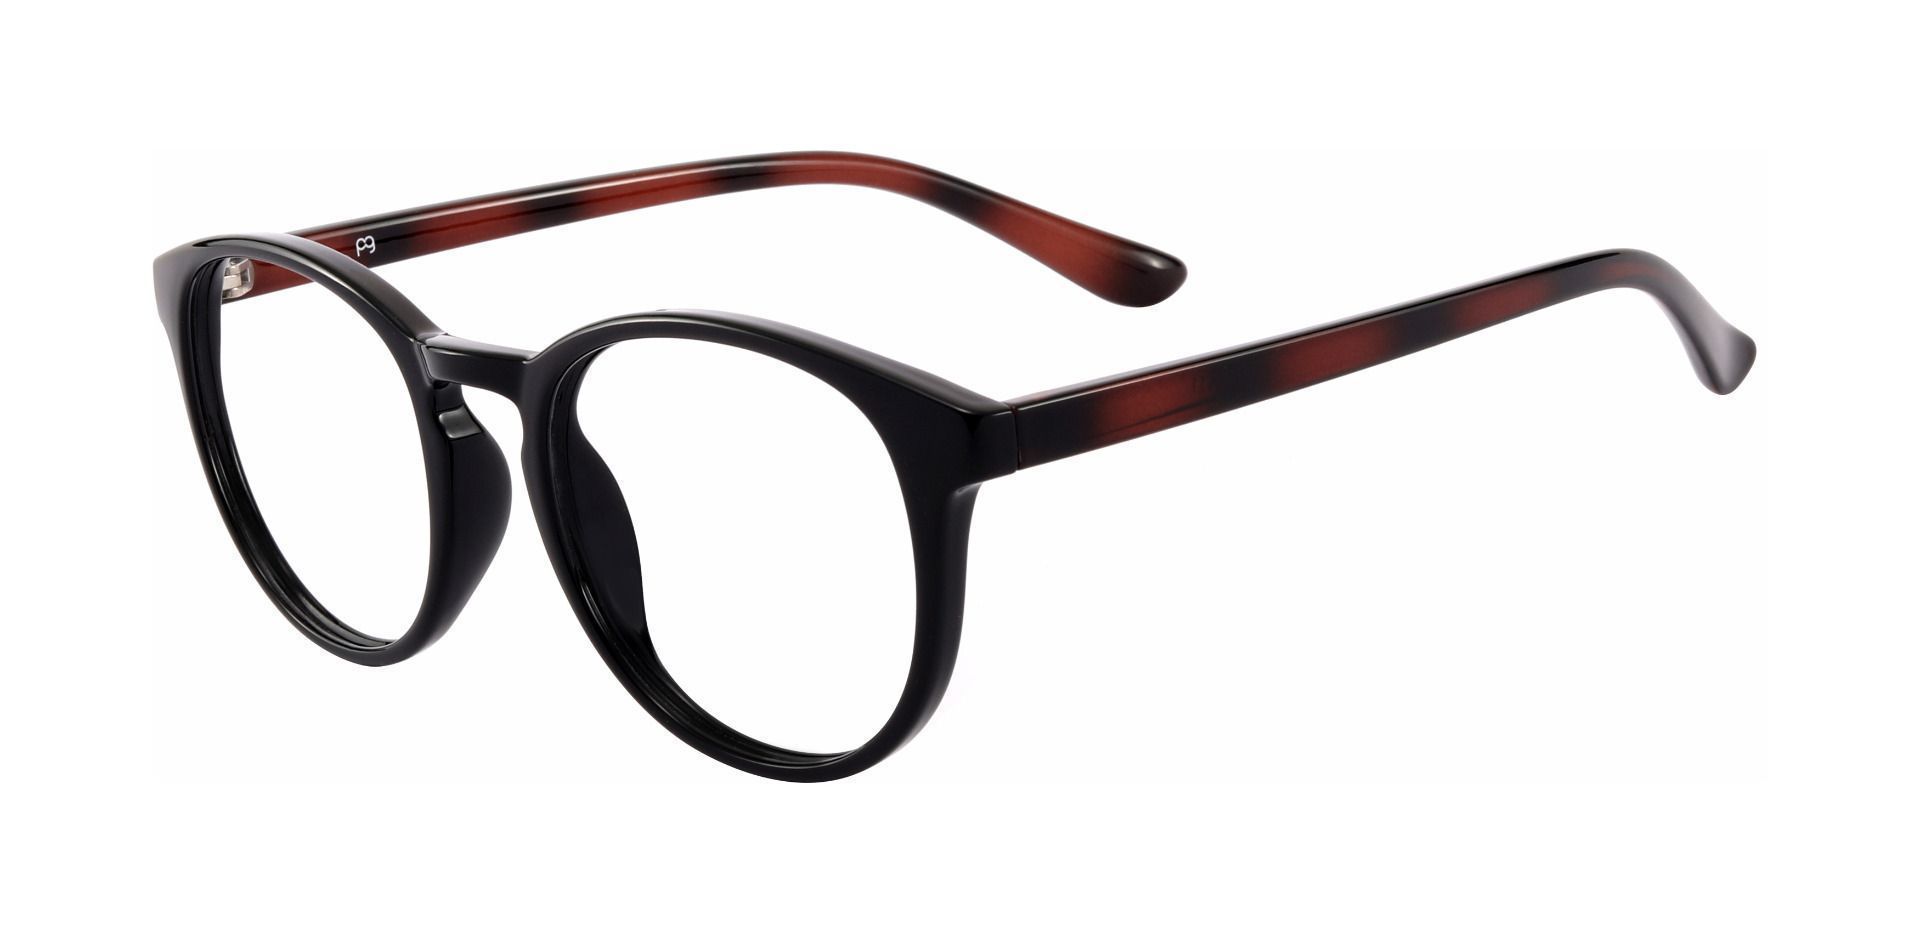 Clarita Oval Progressive Glasses - Black